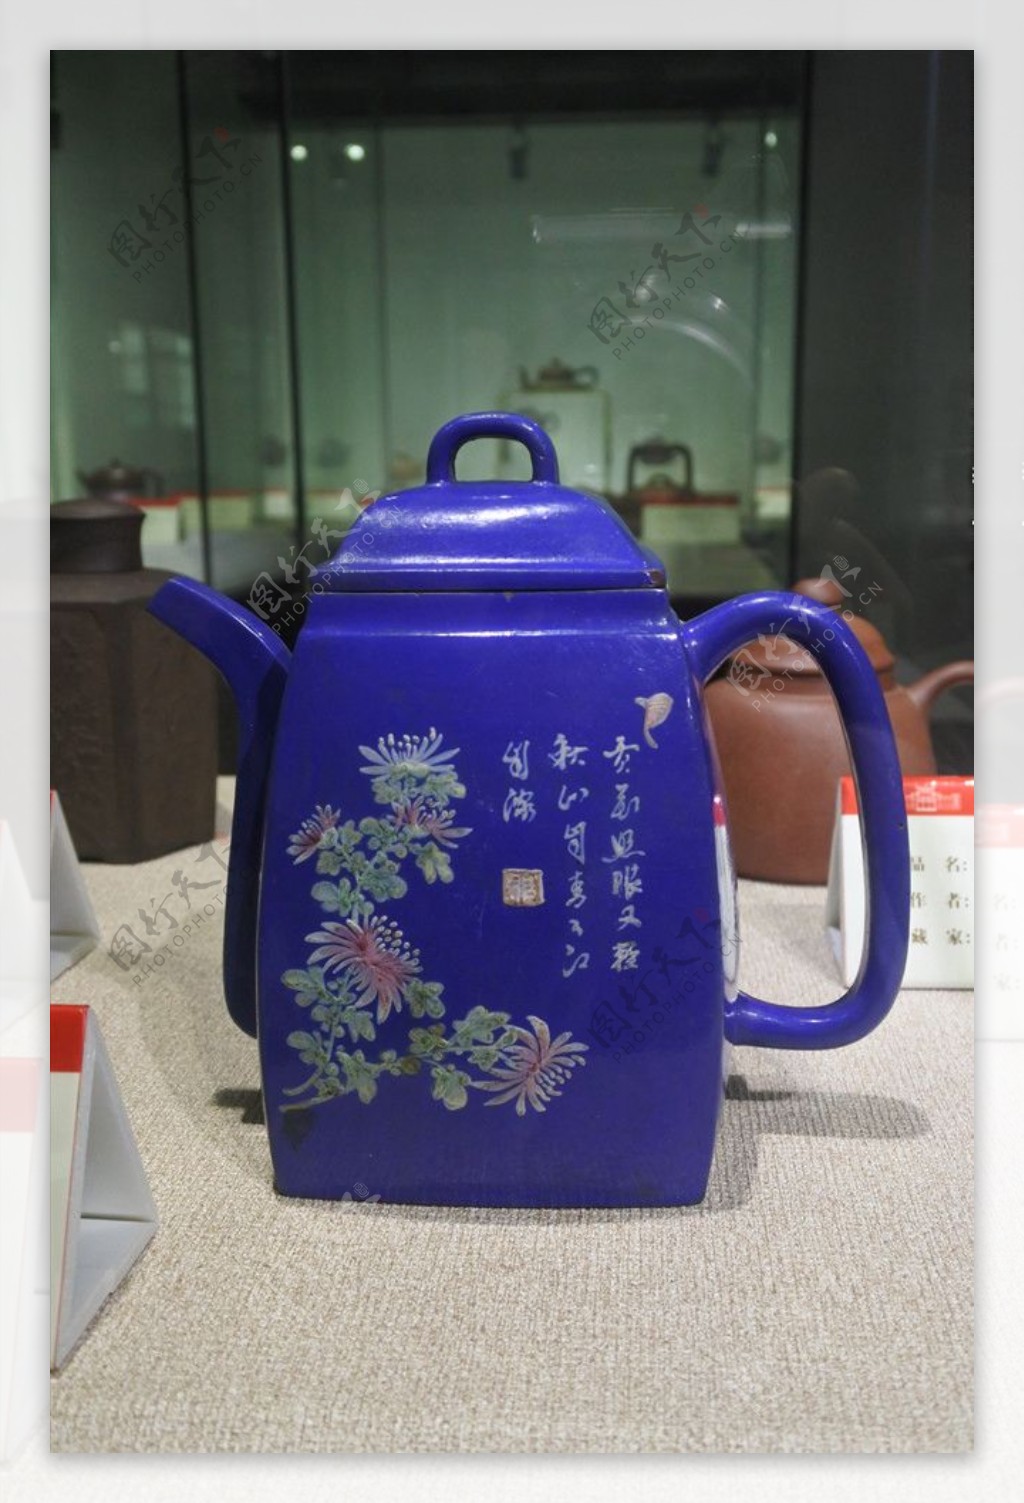 蓝瓷茶壶